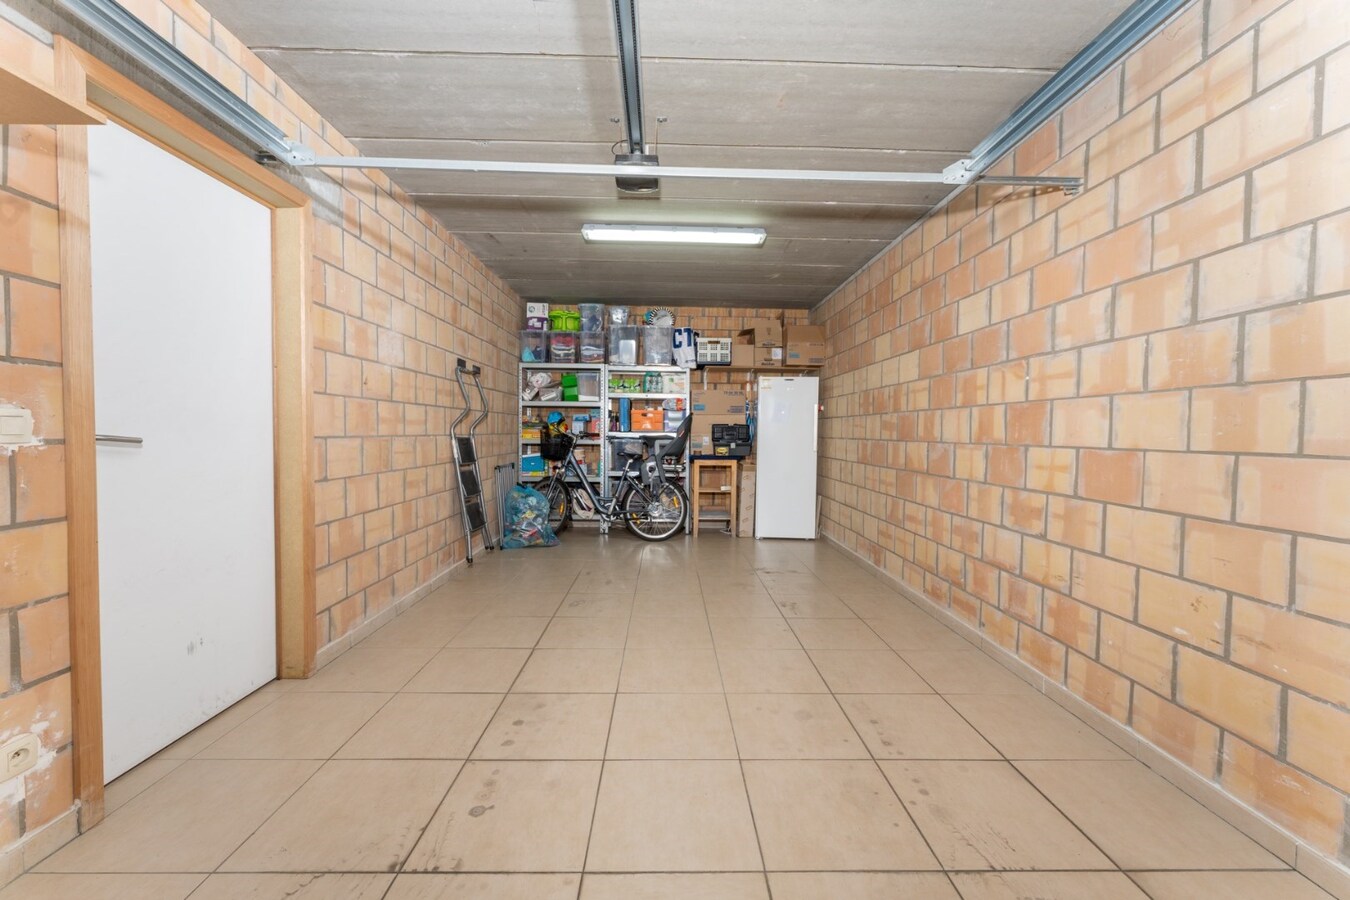 Recente bel etage woning met garage en bijkomende standplaats te Koekelare 